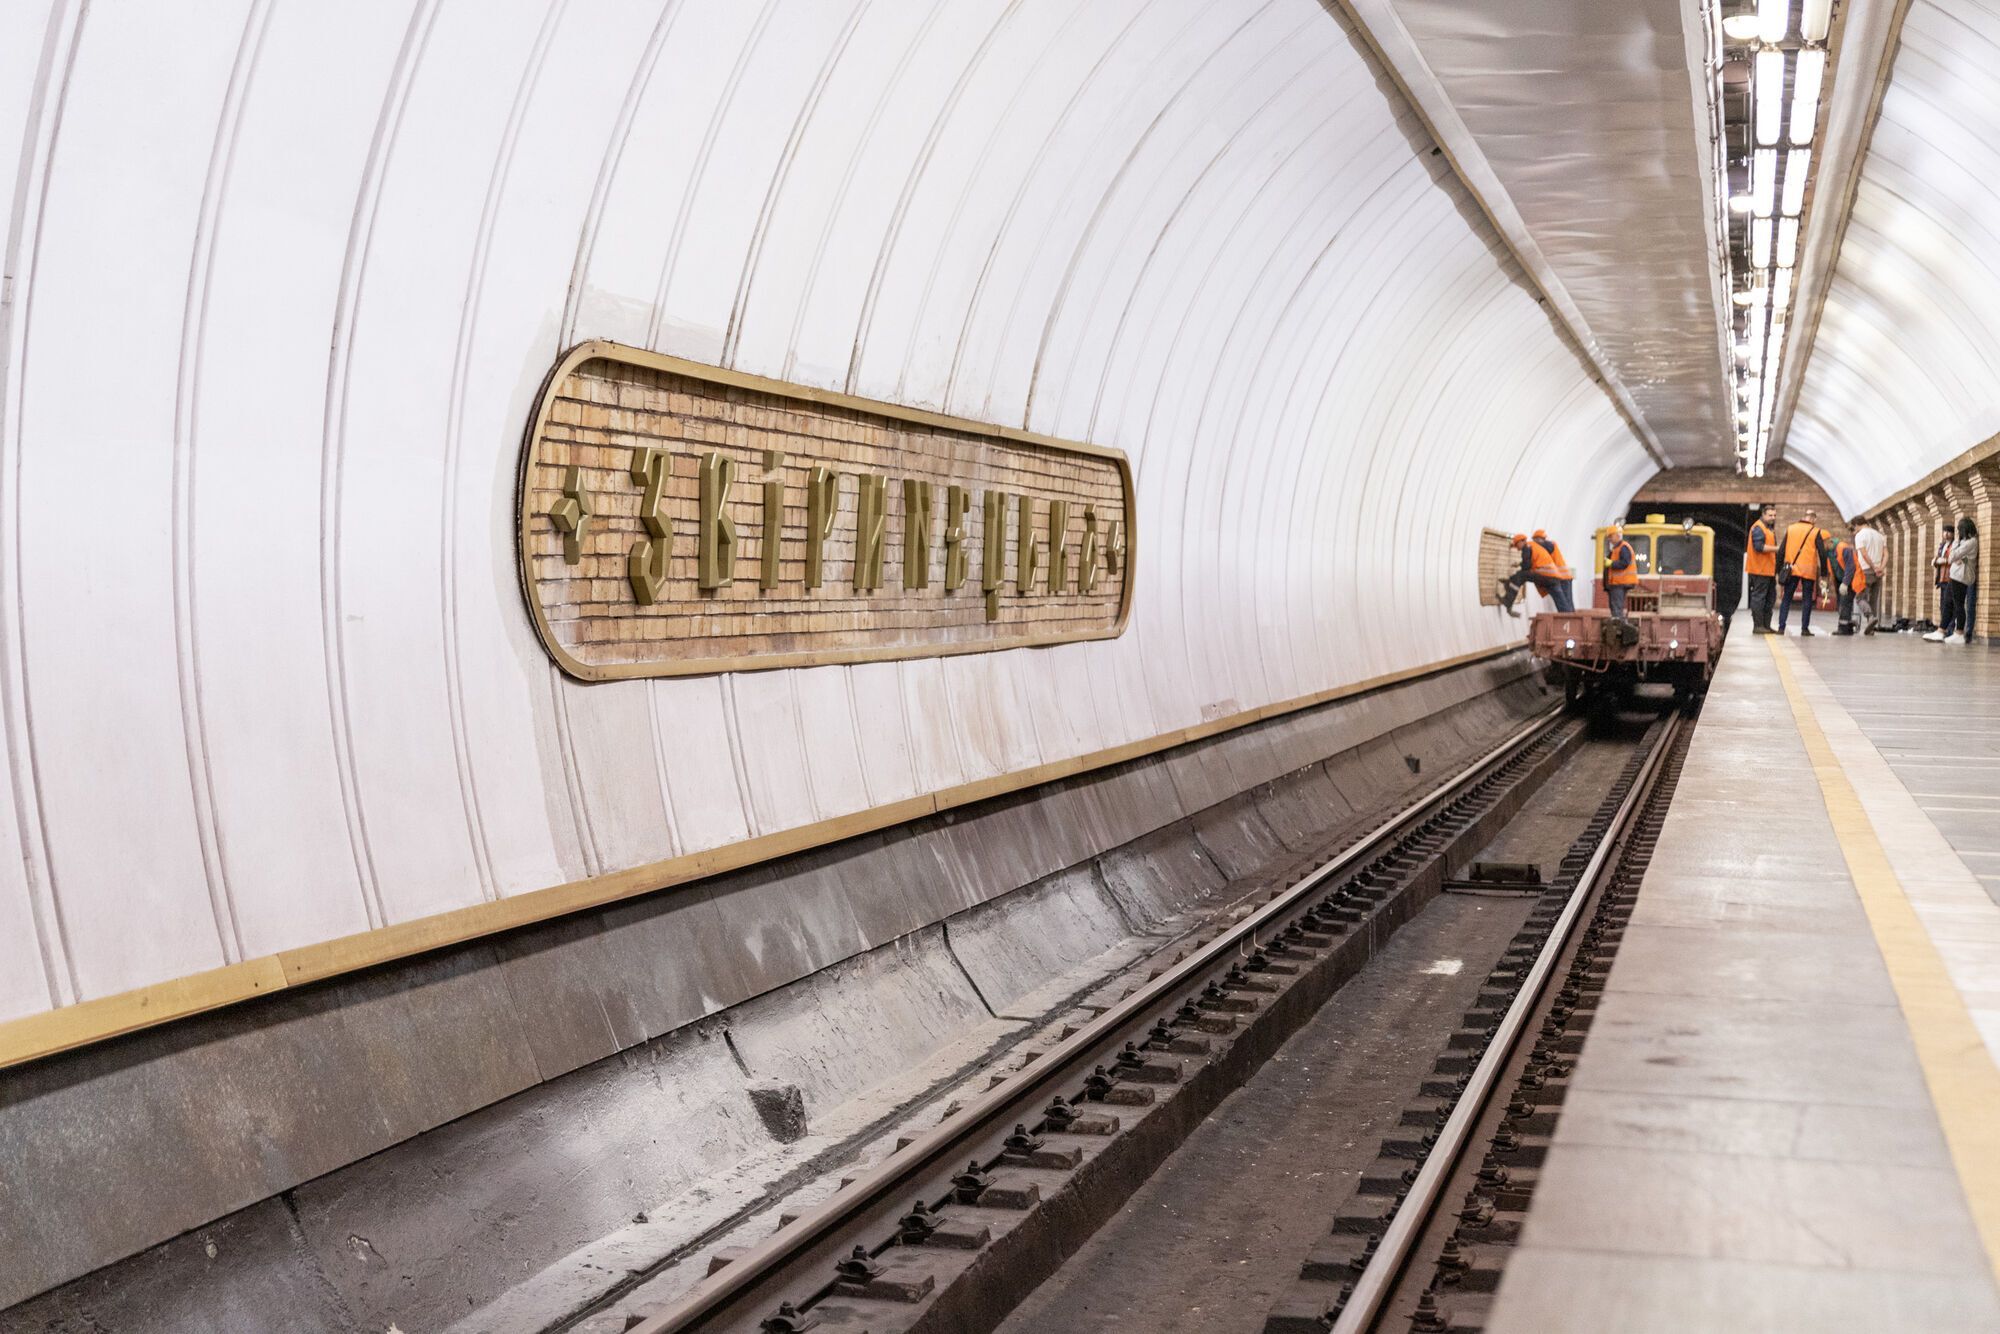 У Києві на станції метро "Звіринецька" почали встановлювати літери нової назви. Подробиці, відео і фото